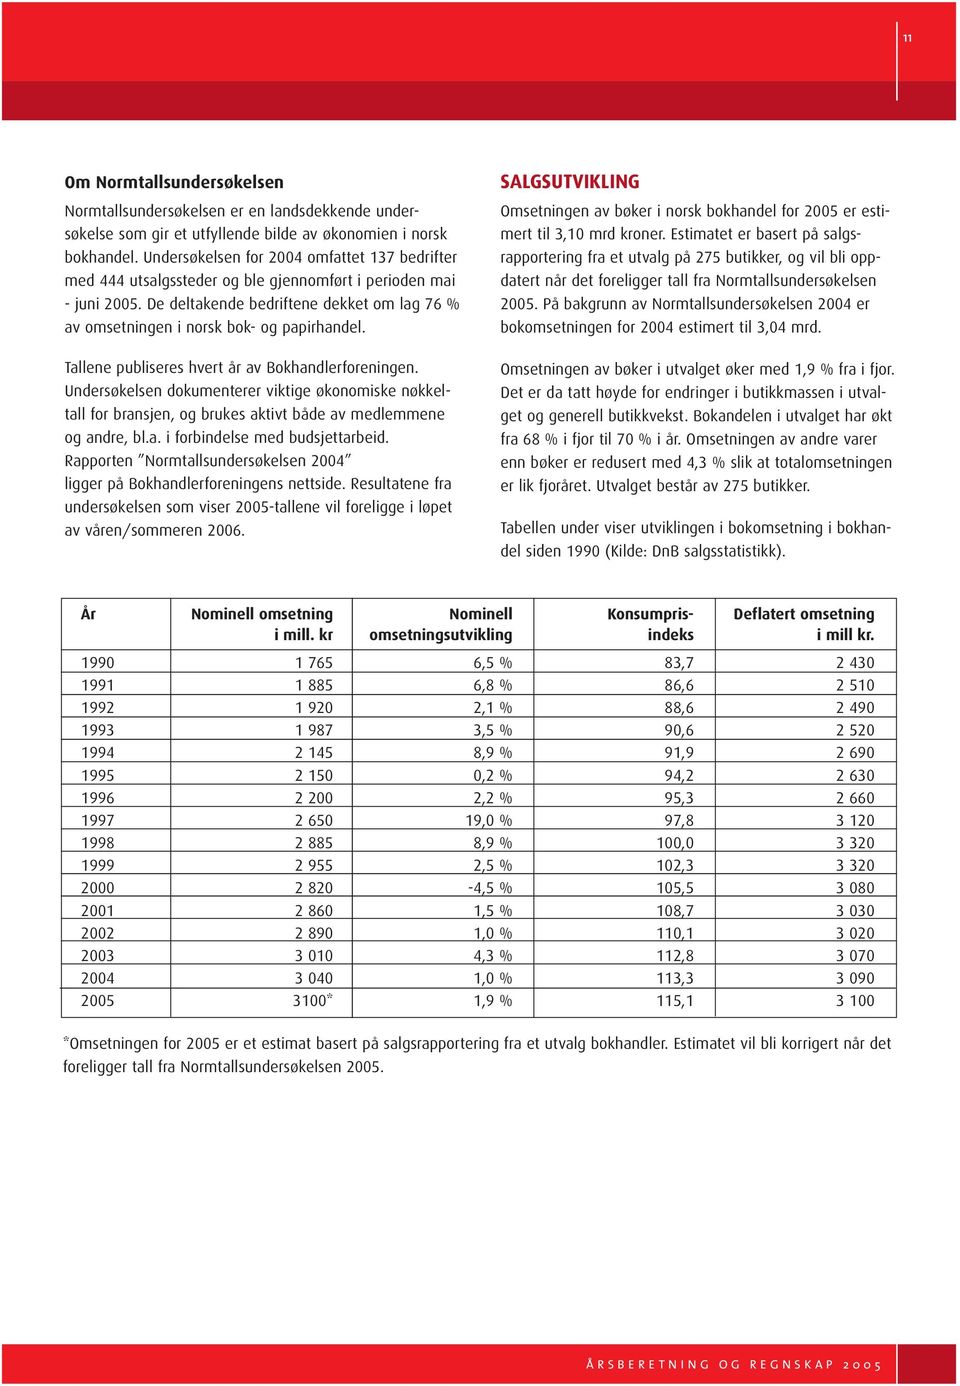 De deltakende bedriftene dekket om lag 76 % av omsetningen i norsk bok- og papirhandel. Tallene publiseres hvert år av Bokhandlerforeningen.